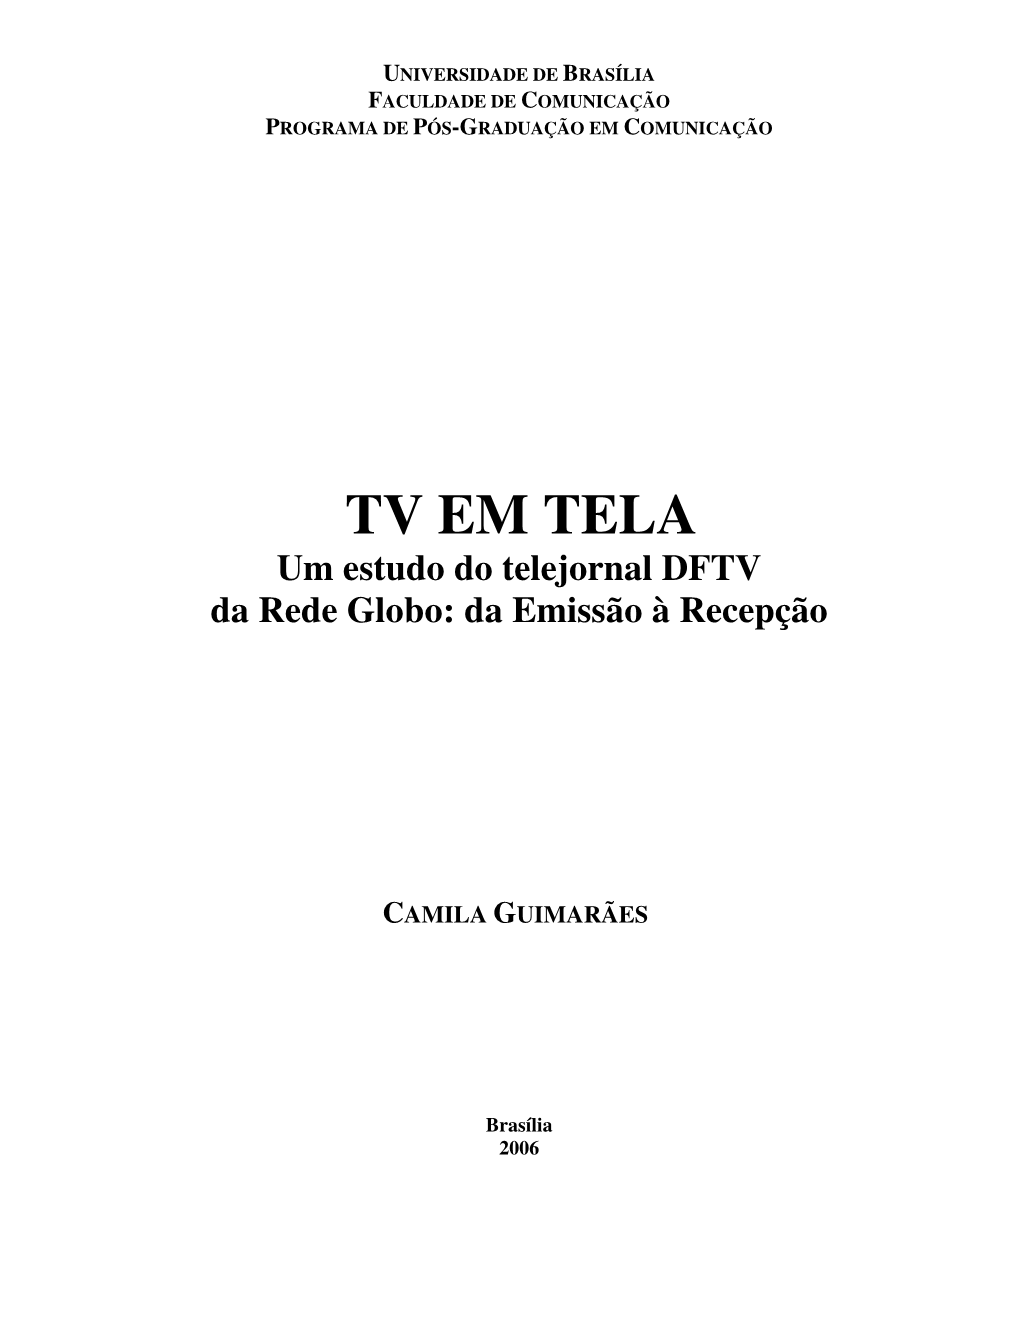 TV EM TELA Um Estudo Do Telejornal DFTV Da Rede Globo: Da Emissão À Recepção